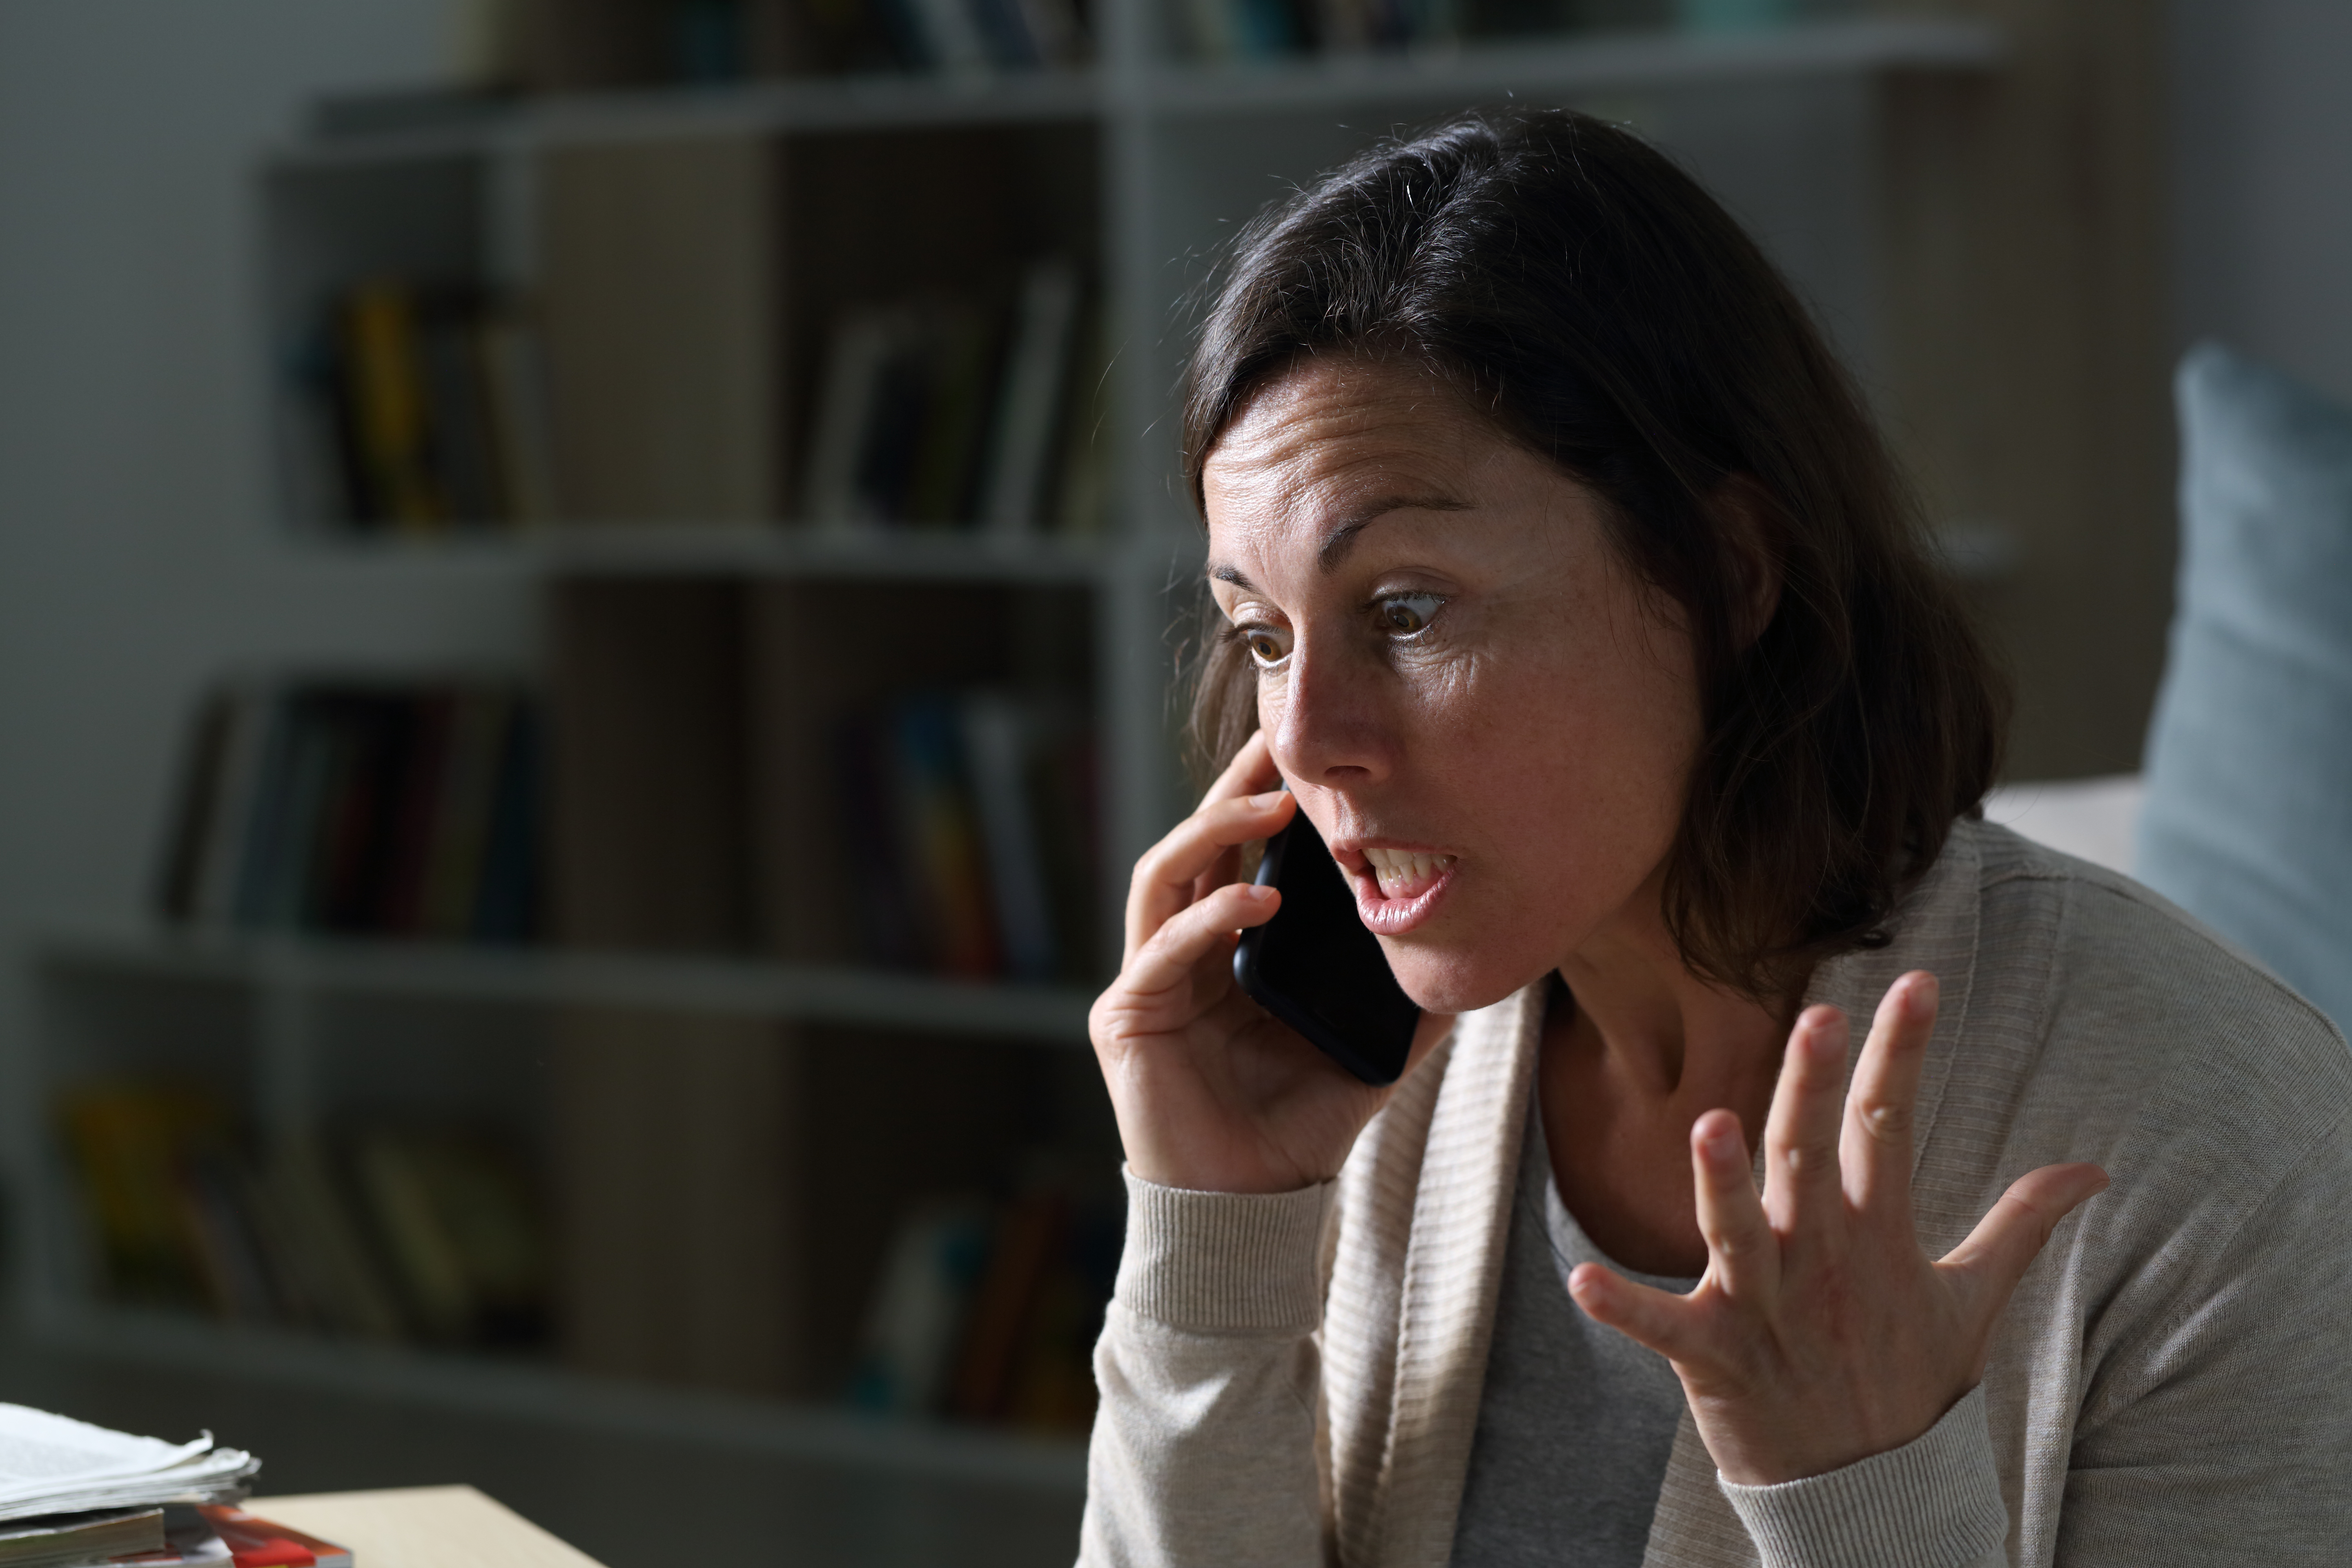 Une femme qui a l'air en colère alors qu'elle est au téléphone | Source : Shutterstock